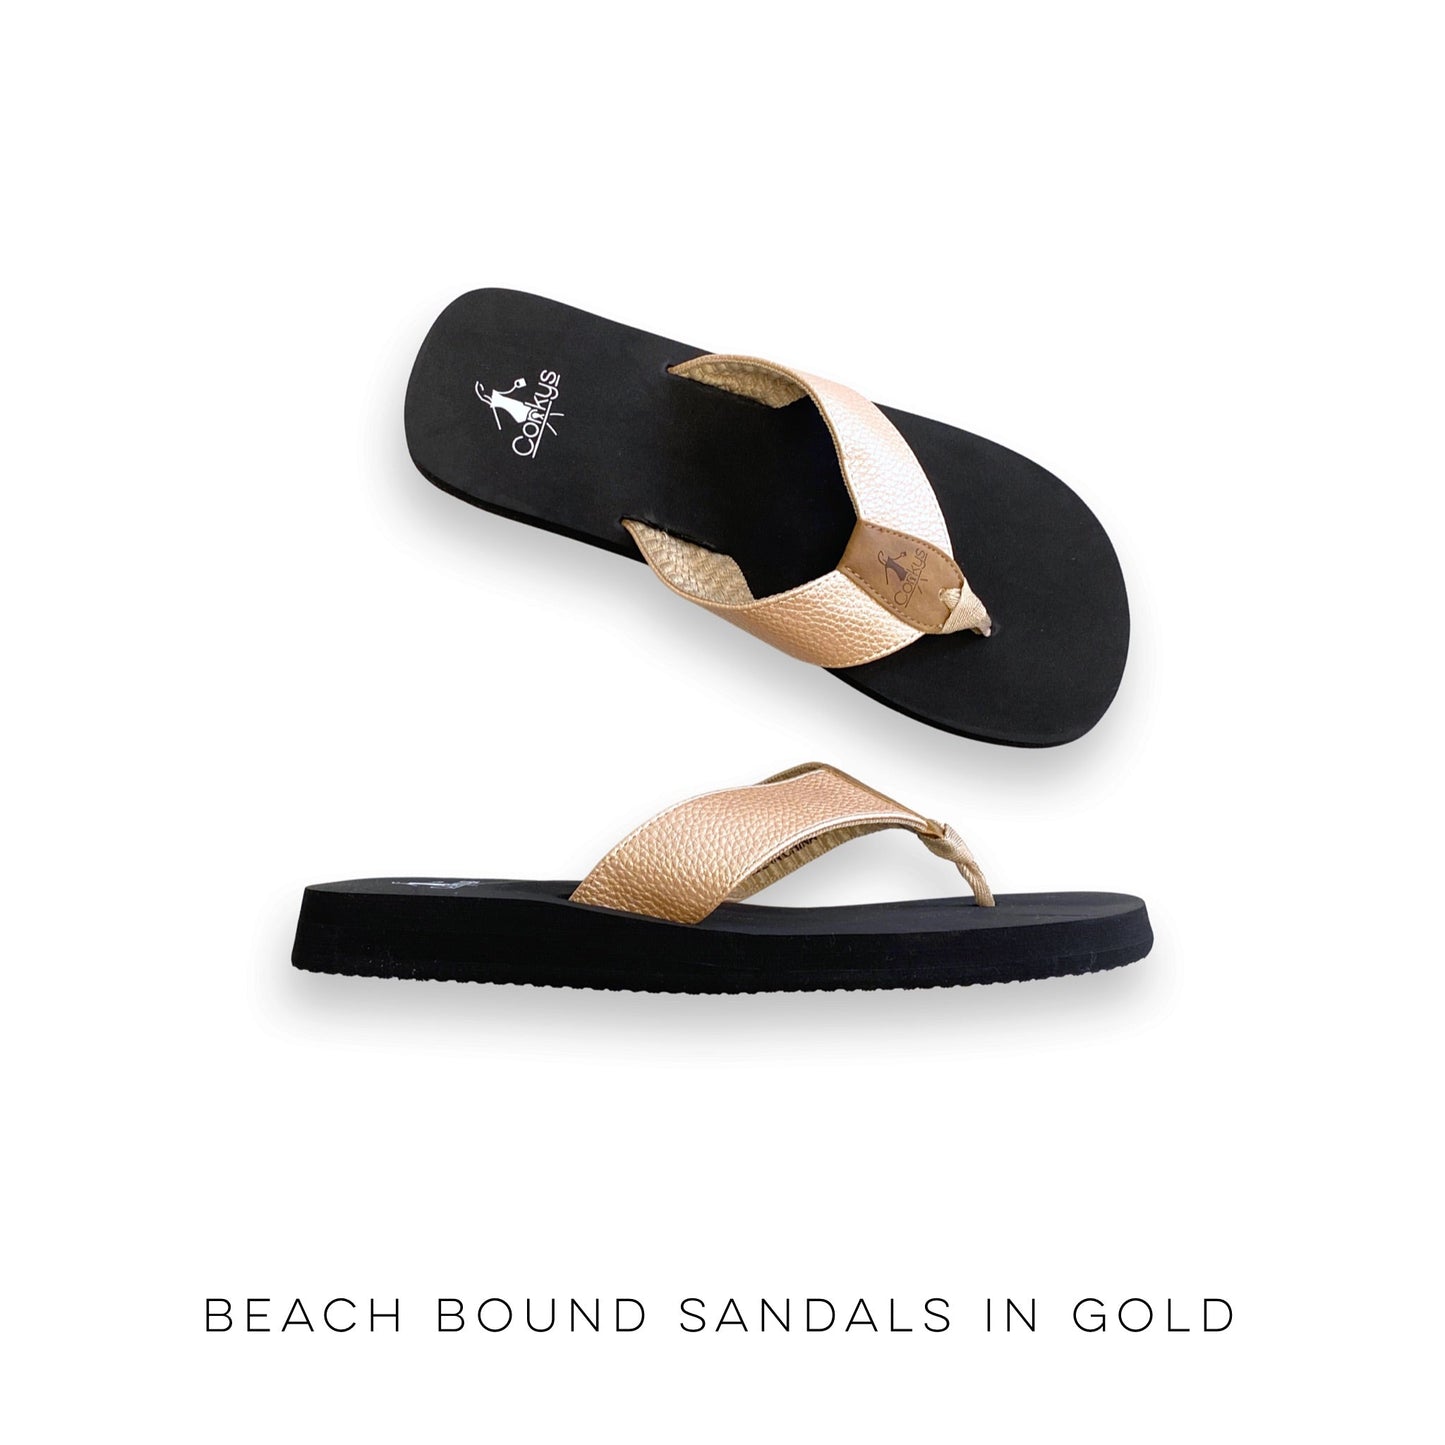 Beach Bound Sandals in Gold